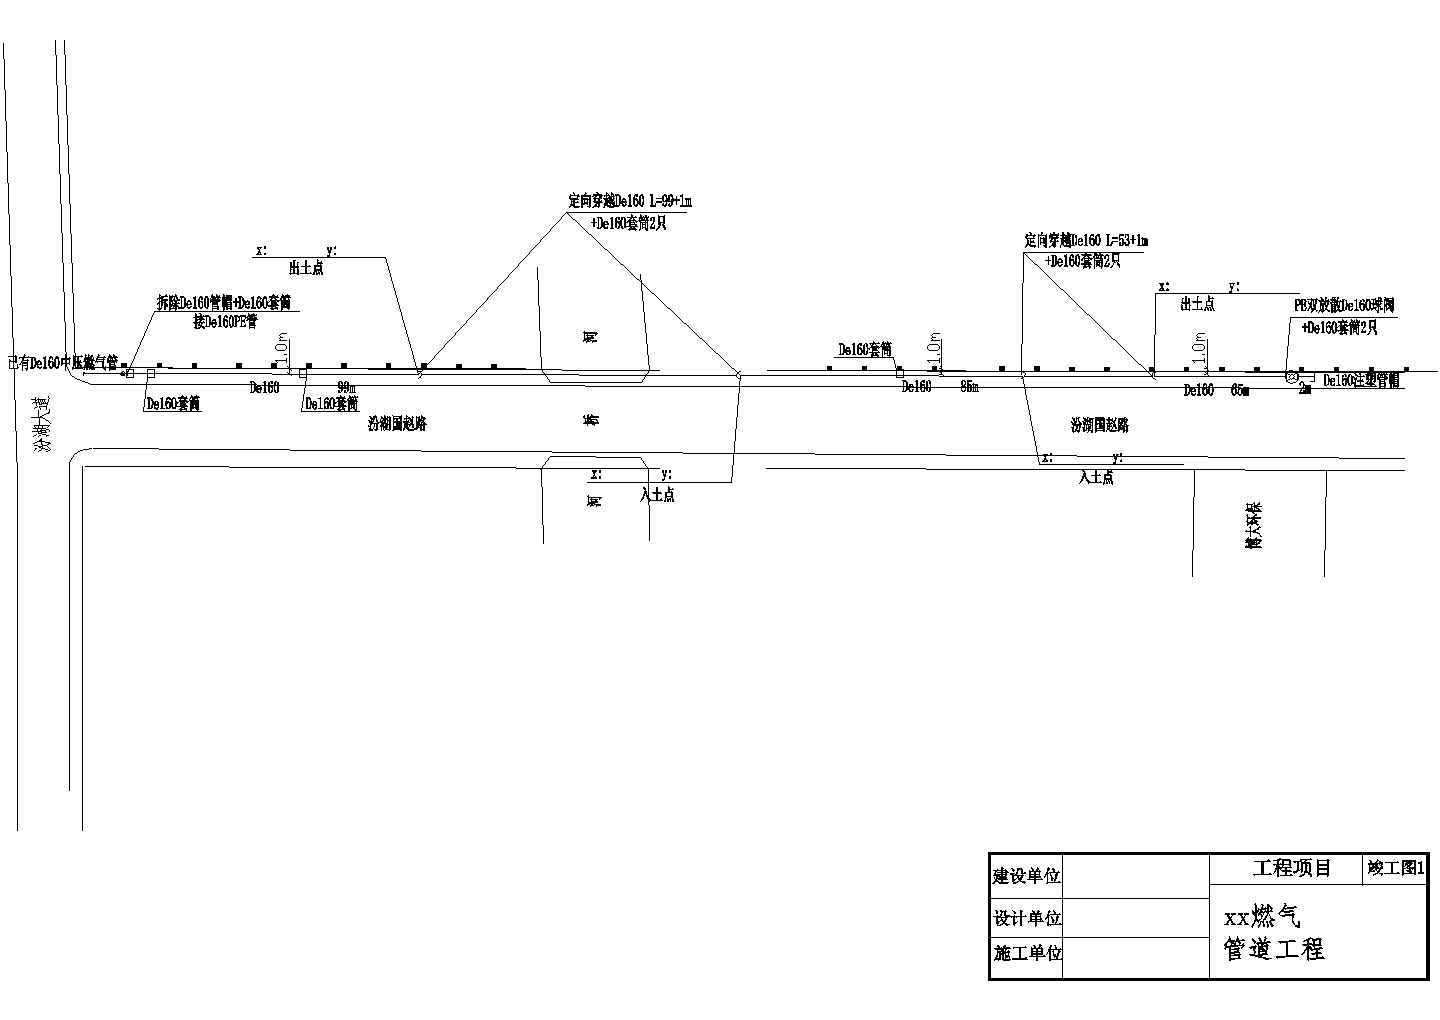 [苏州]昆山某燃气管道工程竣工全套设计cad图(含燃气管道系统图)